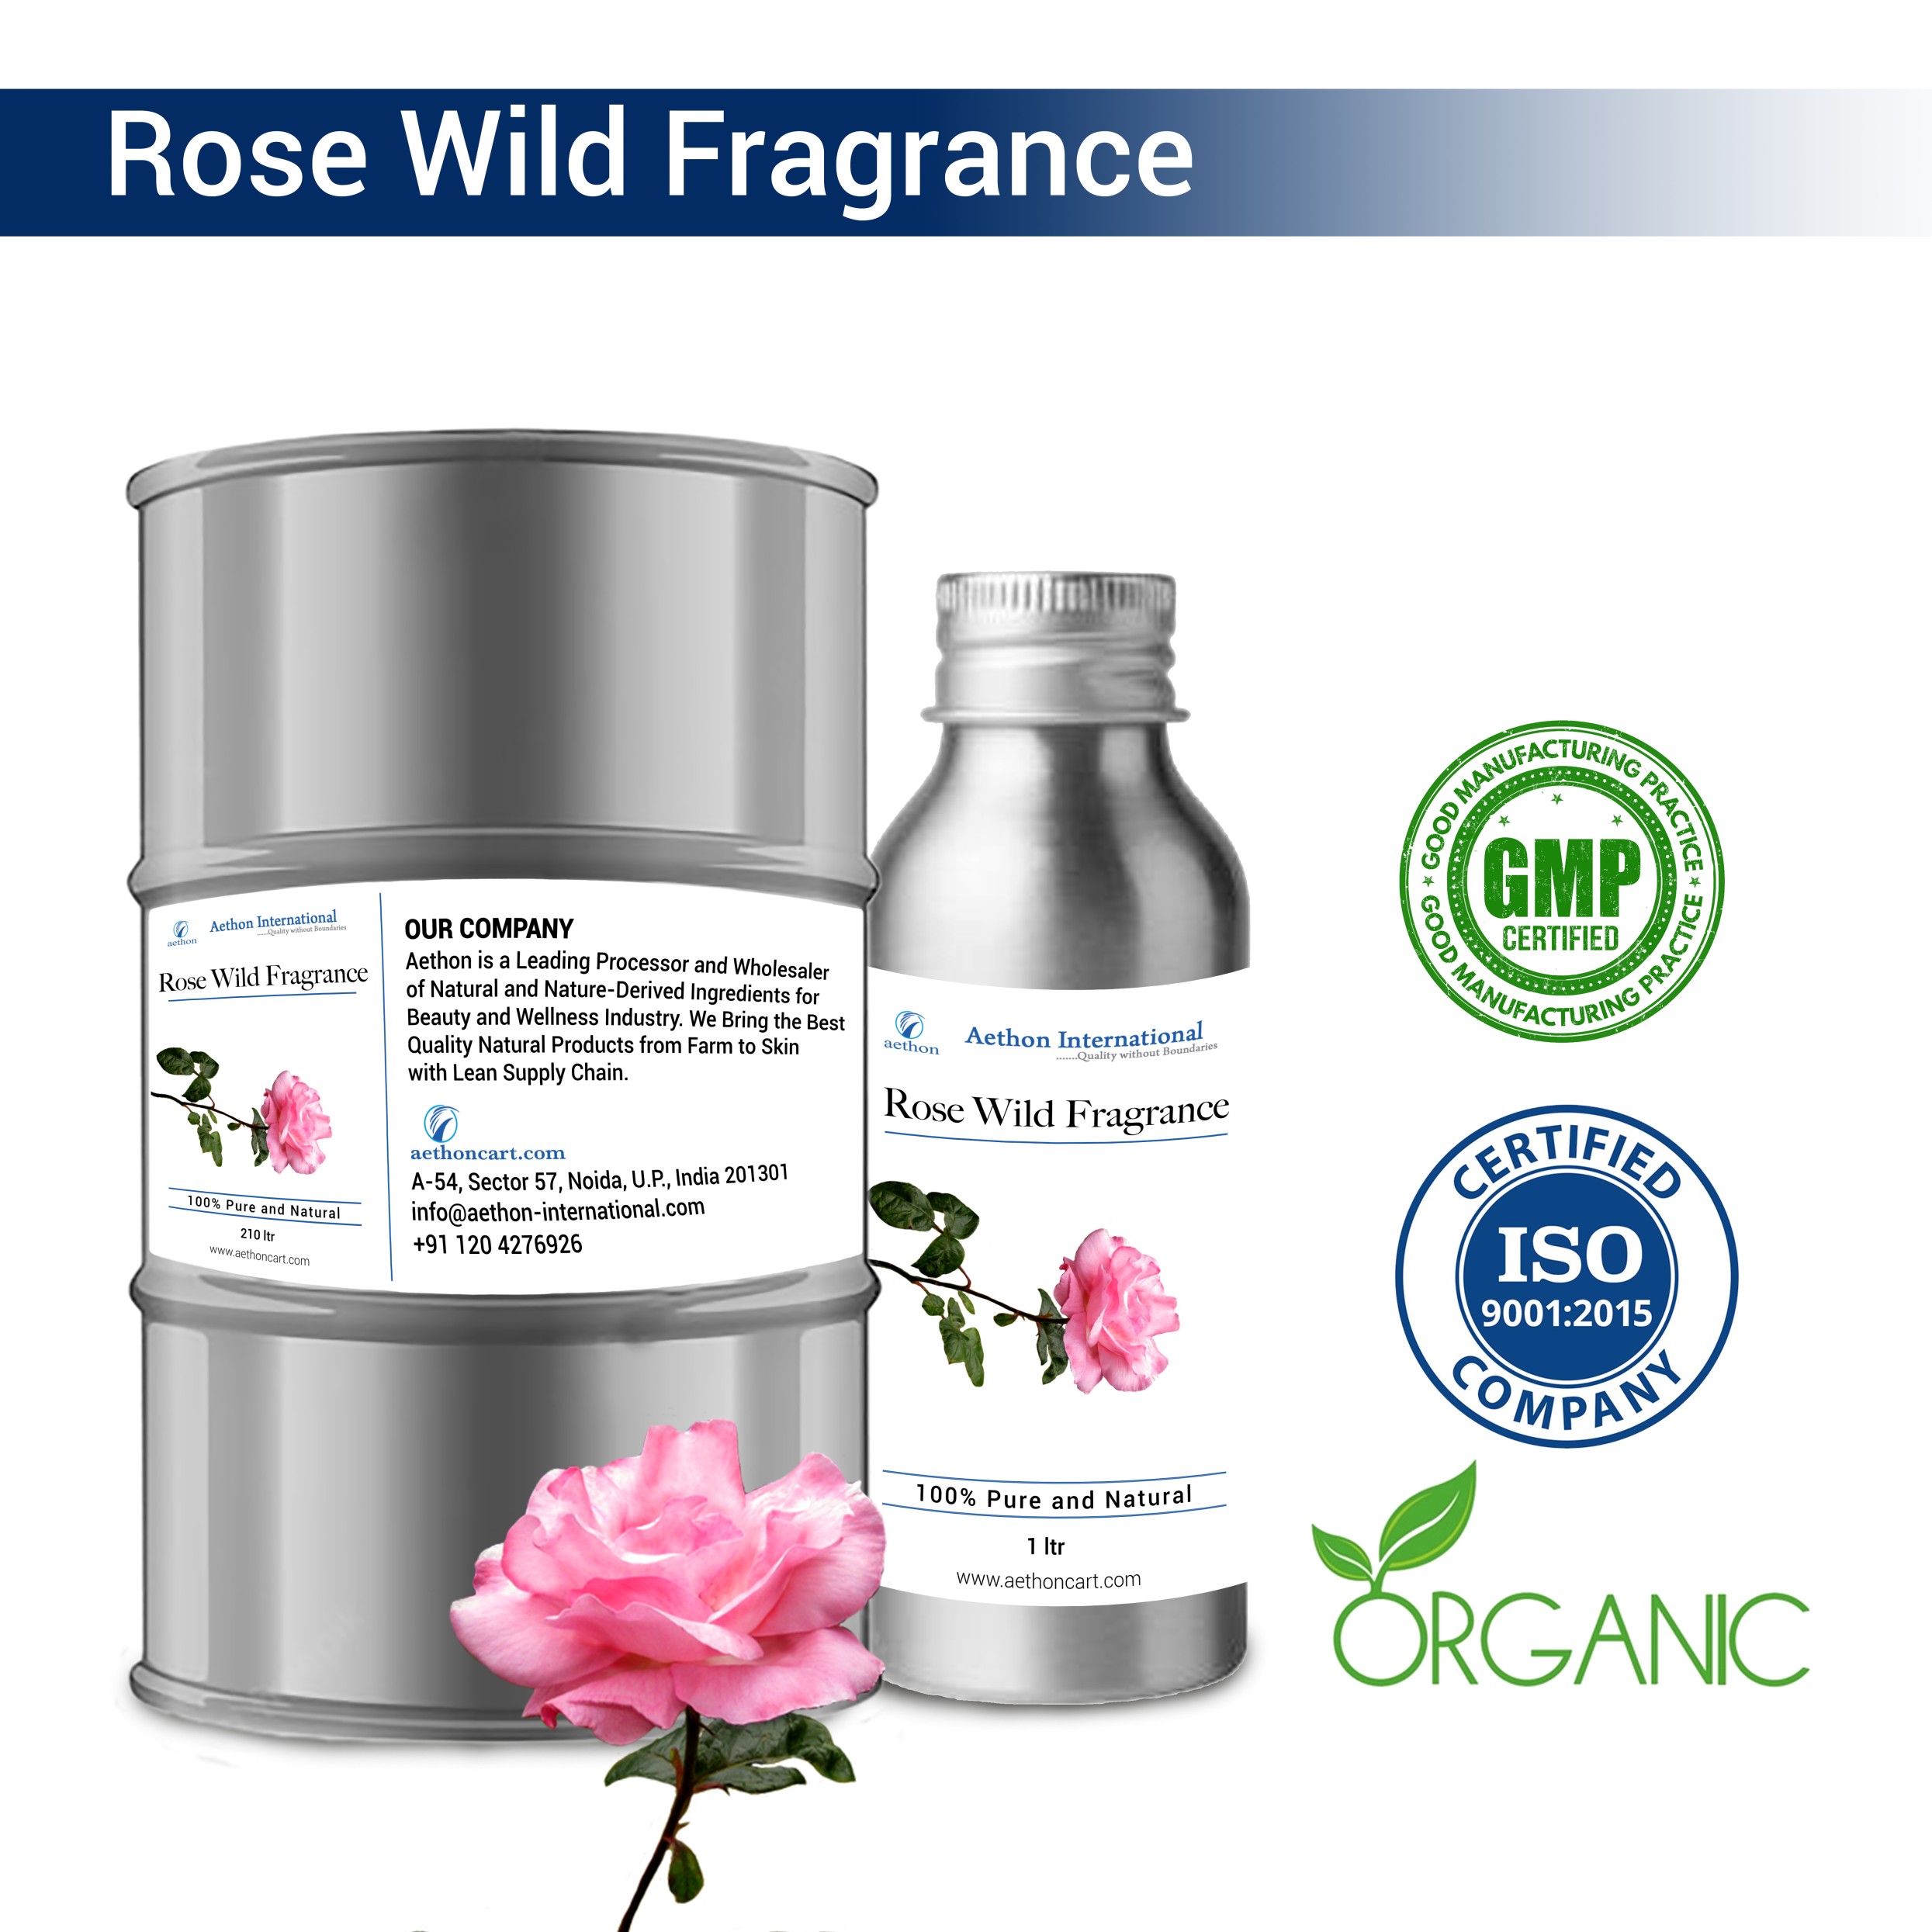 Rose Wild Fragrance